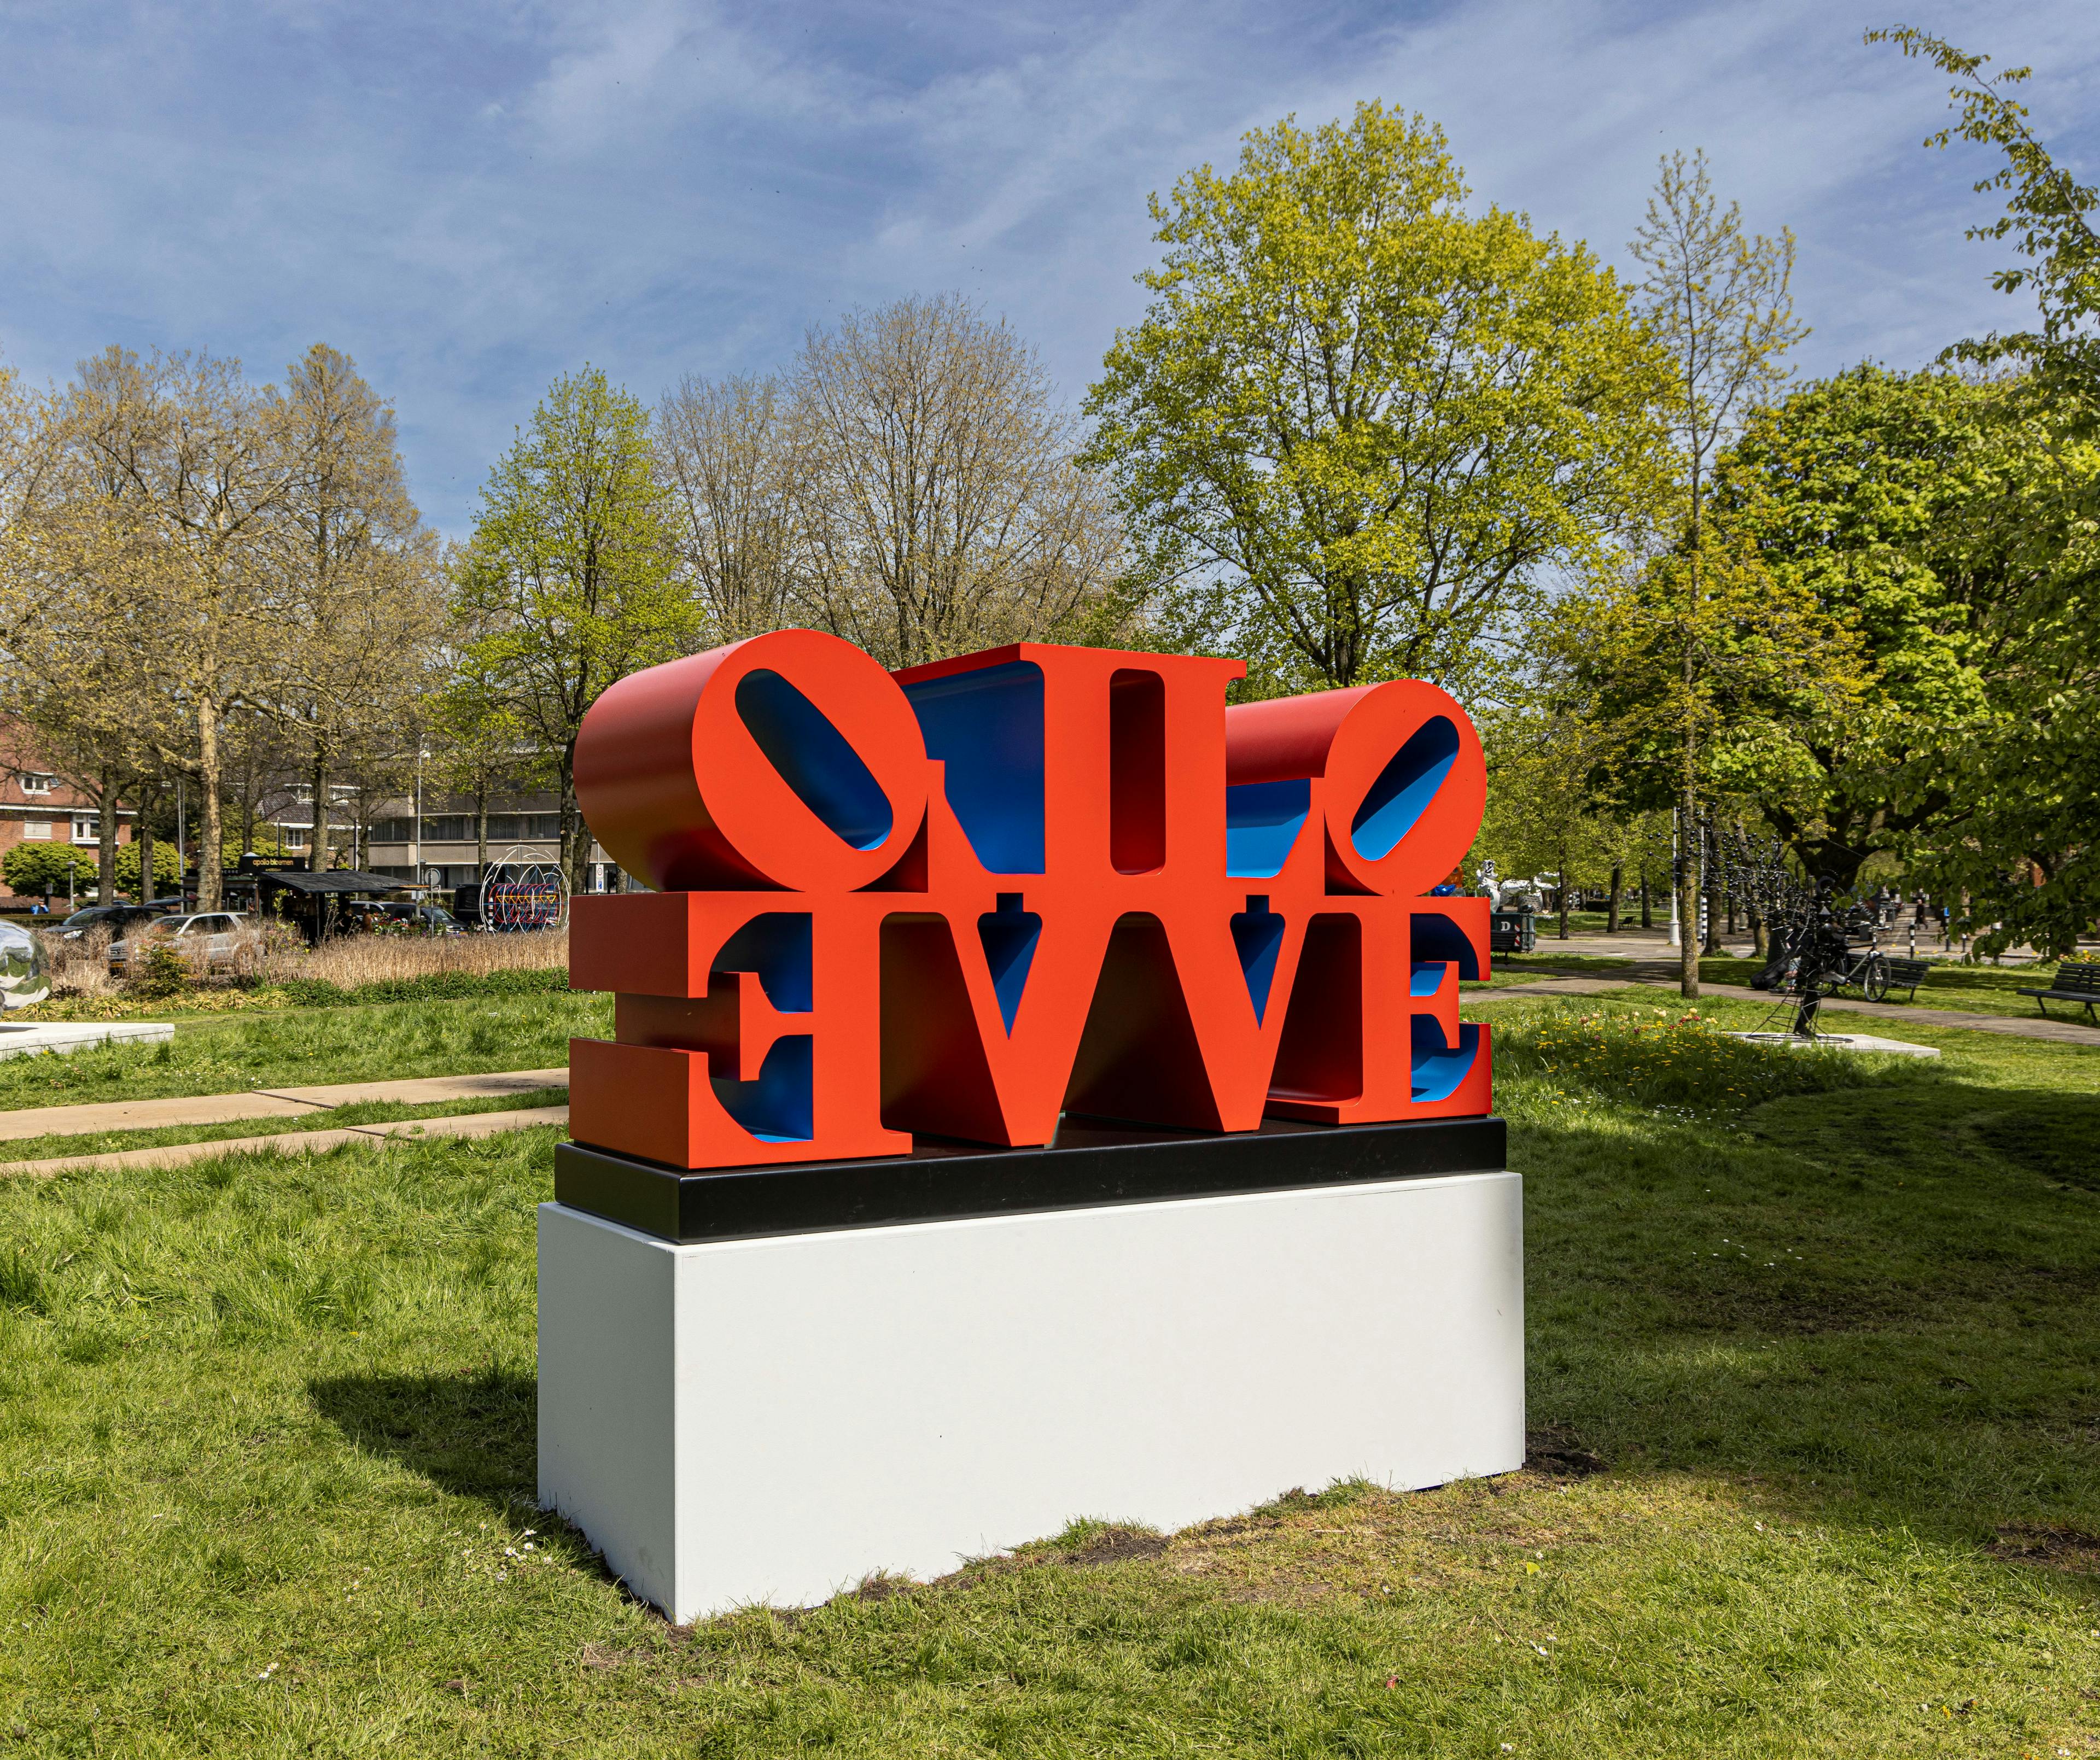 Amsterdam Sculpture Biennale ARTZUID